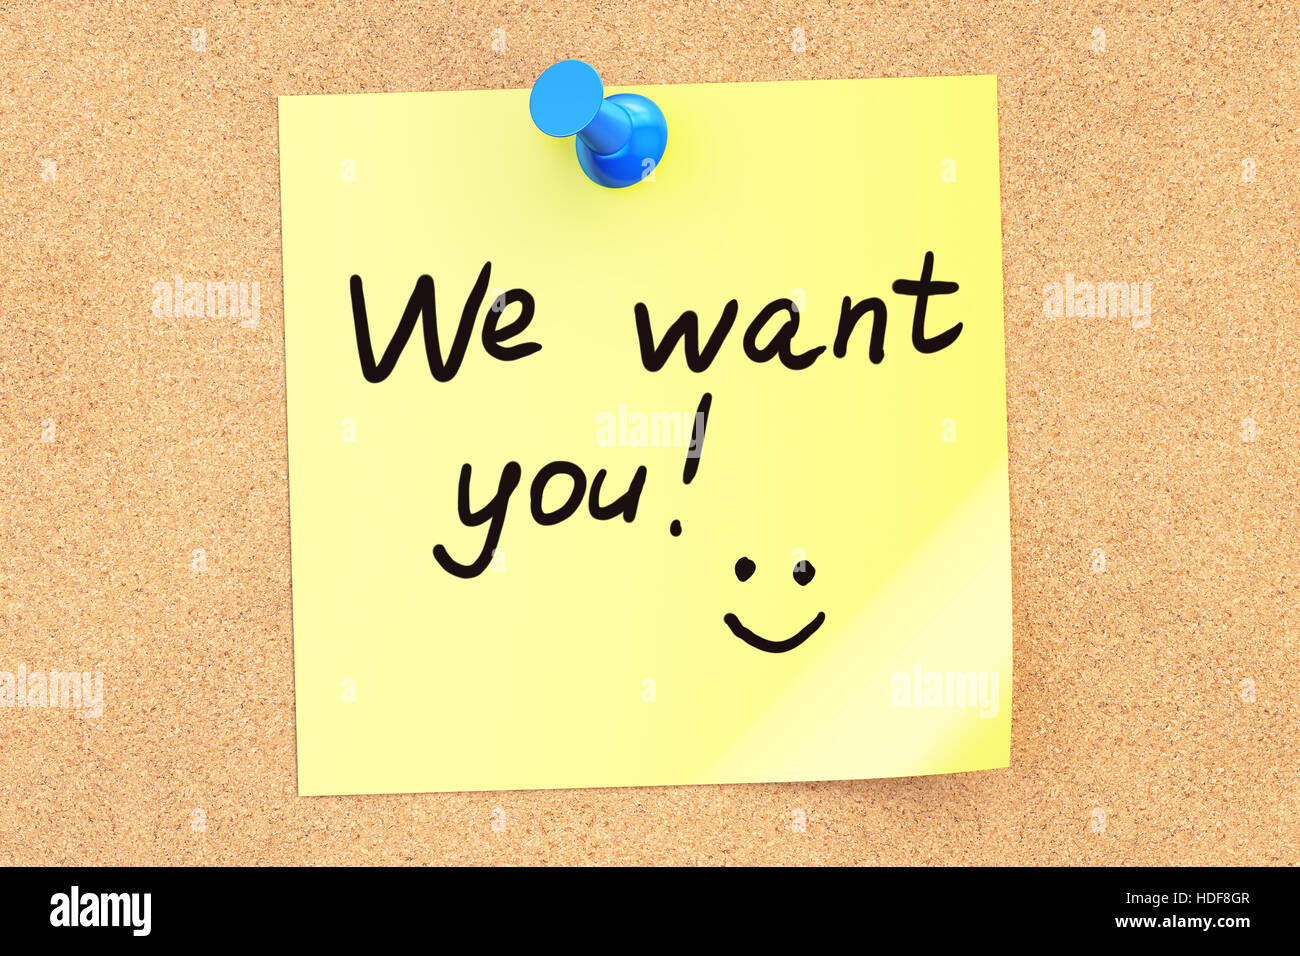 Wir wollen dich! Text auf einem Zettel an einer Pinnwand angeheftet. 3D-Rendering Stockfoto